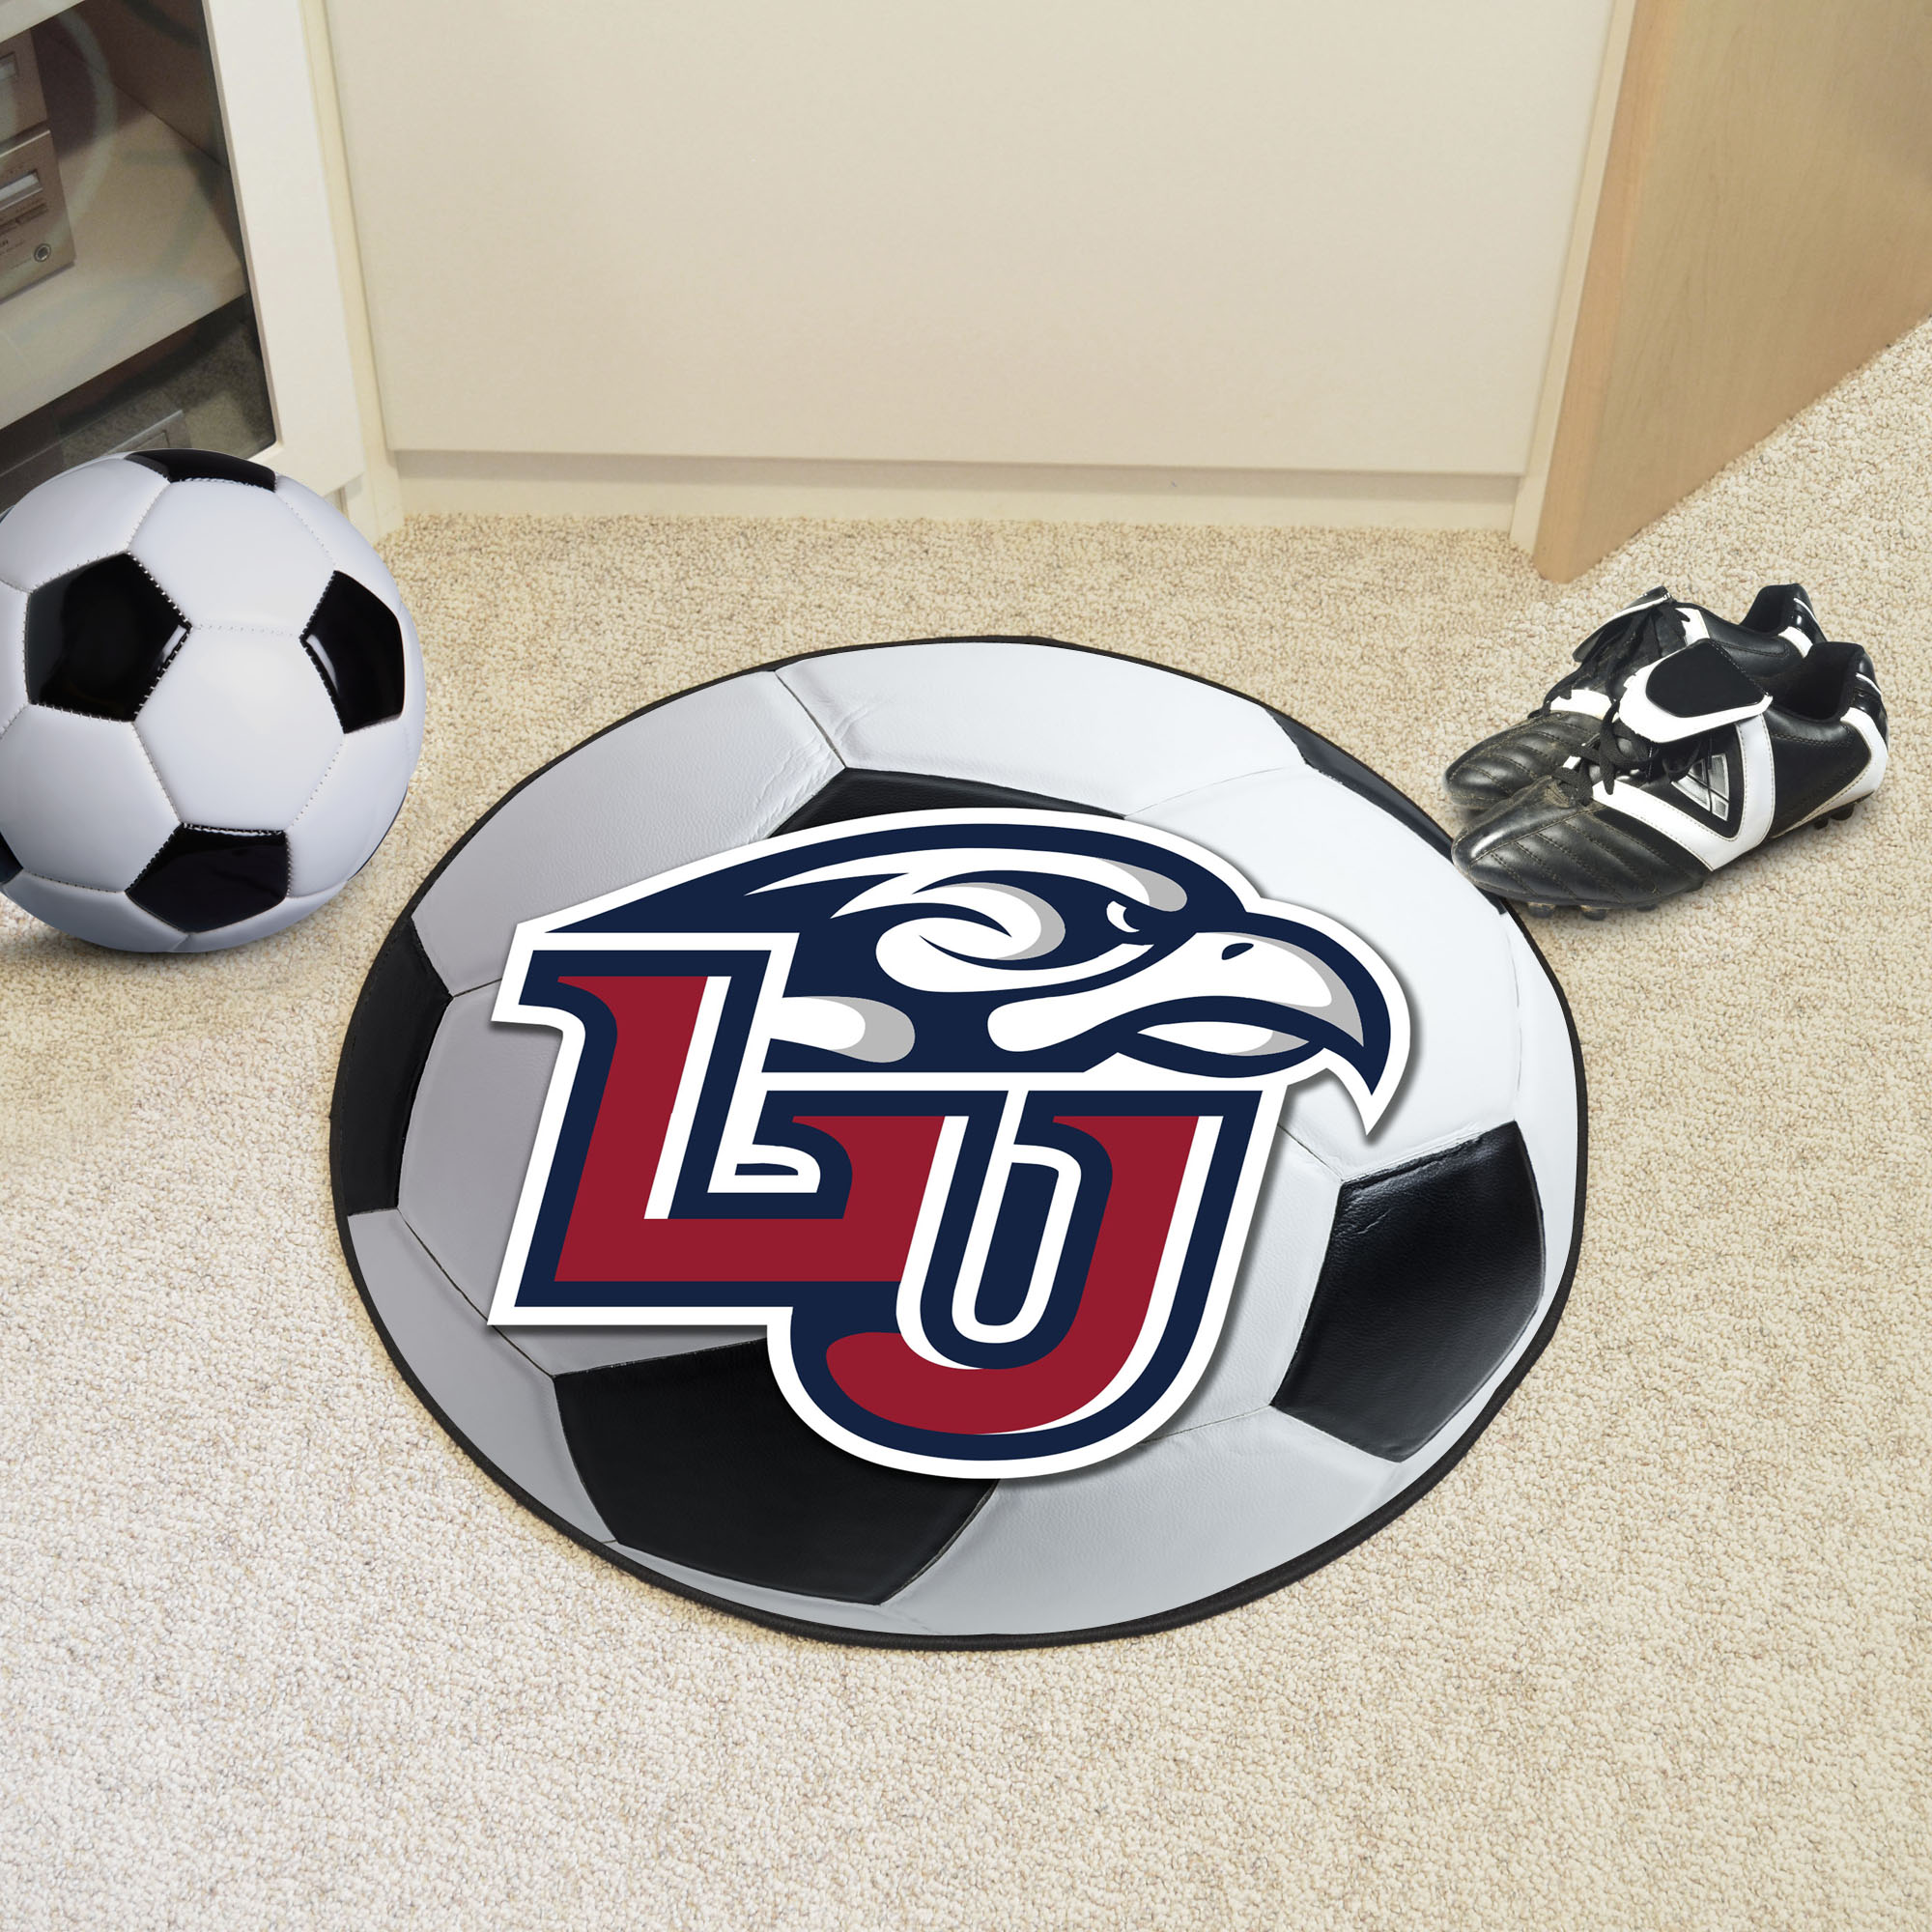 Liberty University Ball Shaped Area Rugs (Ball Shaped Area Rugs: Soccer Ball)